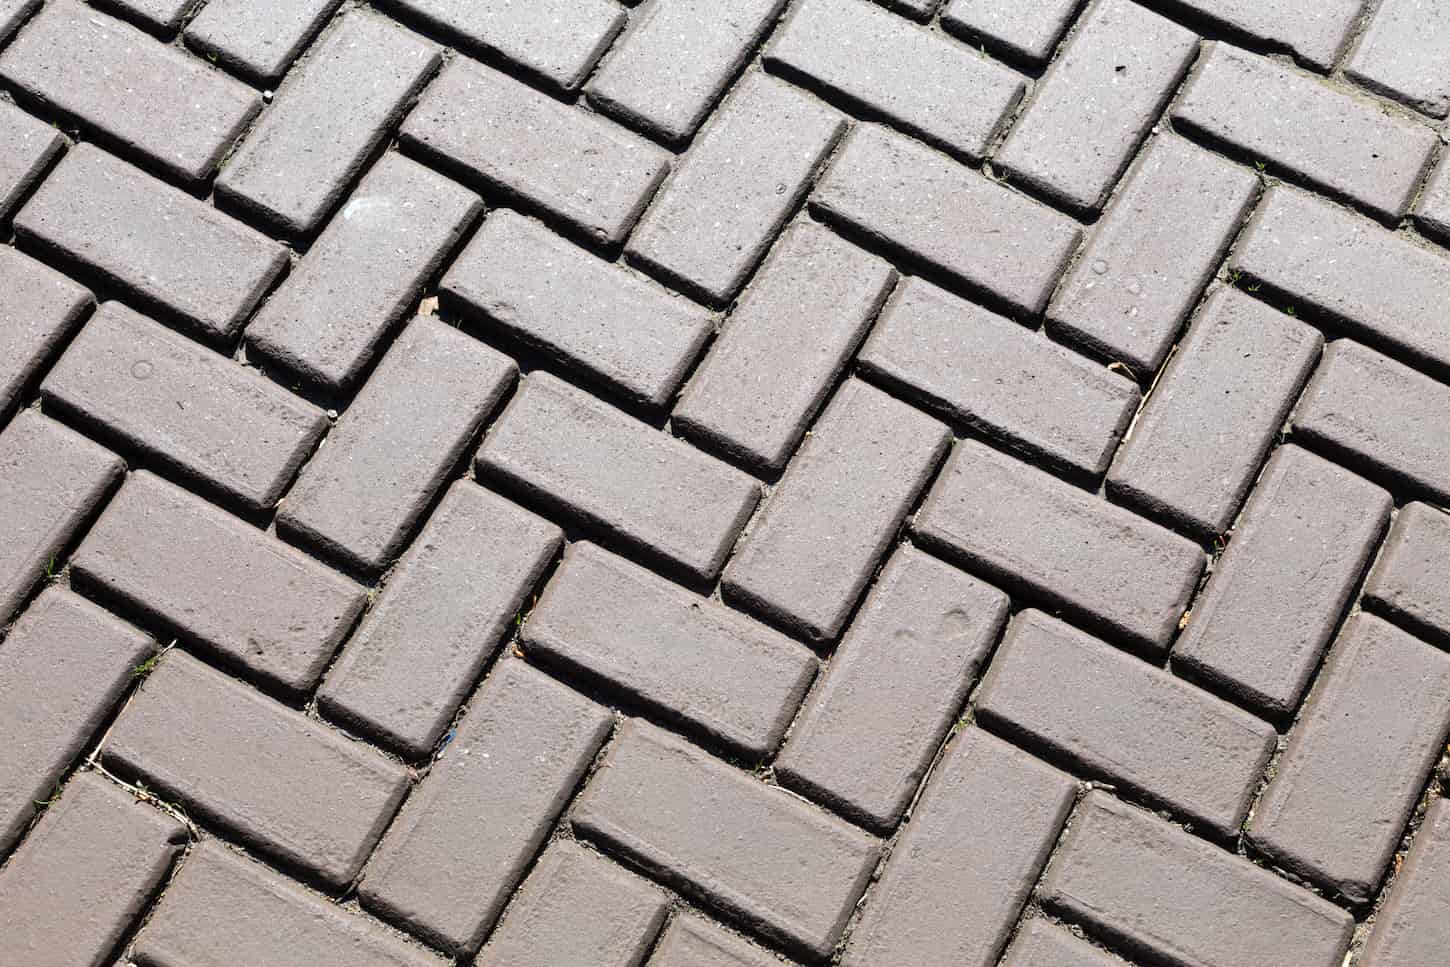 An image of Dark gray brick pavers.